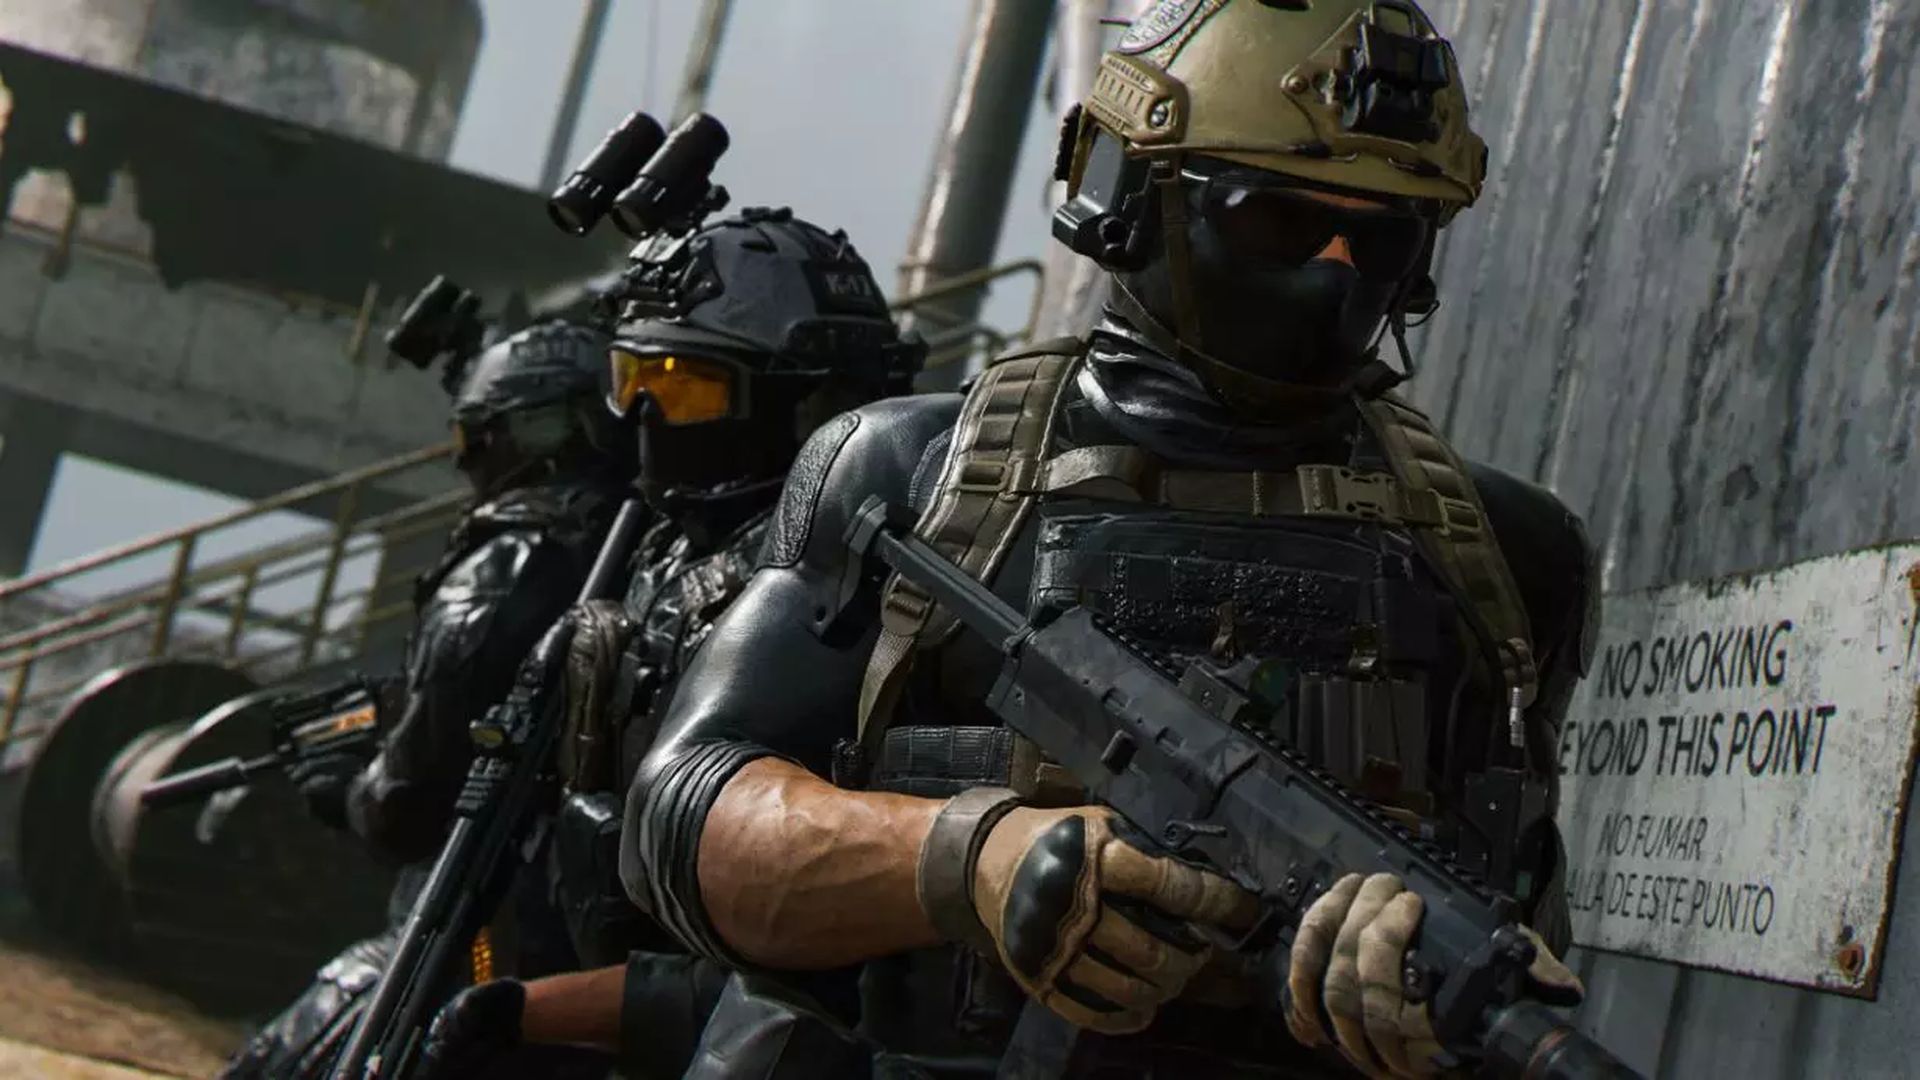 Als jij een van de gamers bent die de nieuwe CoD-game wil spelen maar niet de volledige prijs wil betalen, dan is de Black Friday-uitverkoop van Modern Warfare 2 misschien wel de...